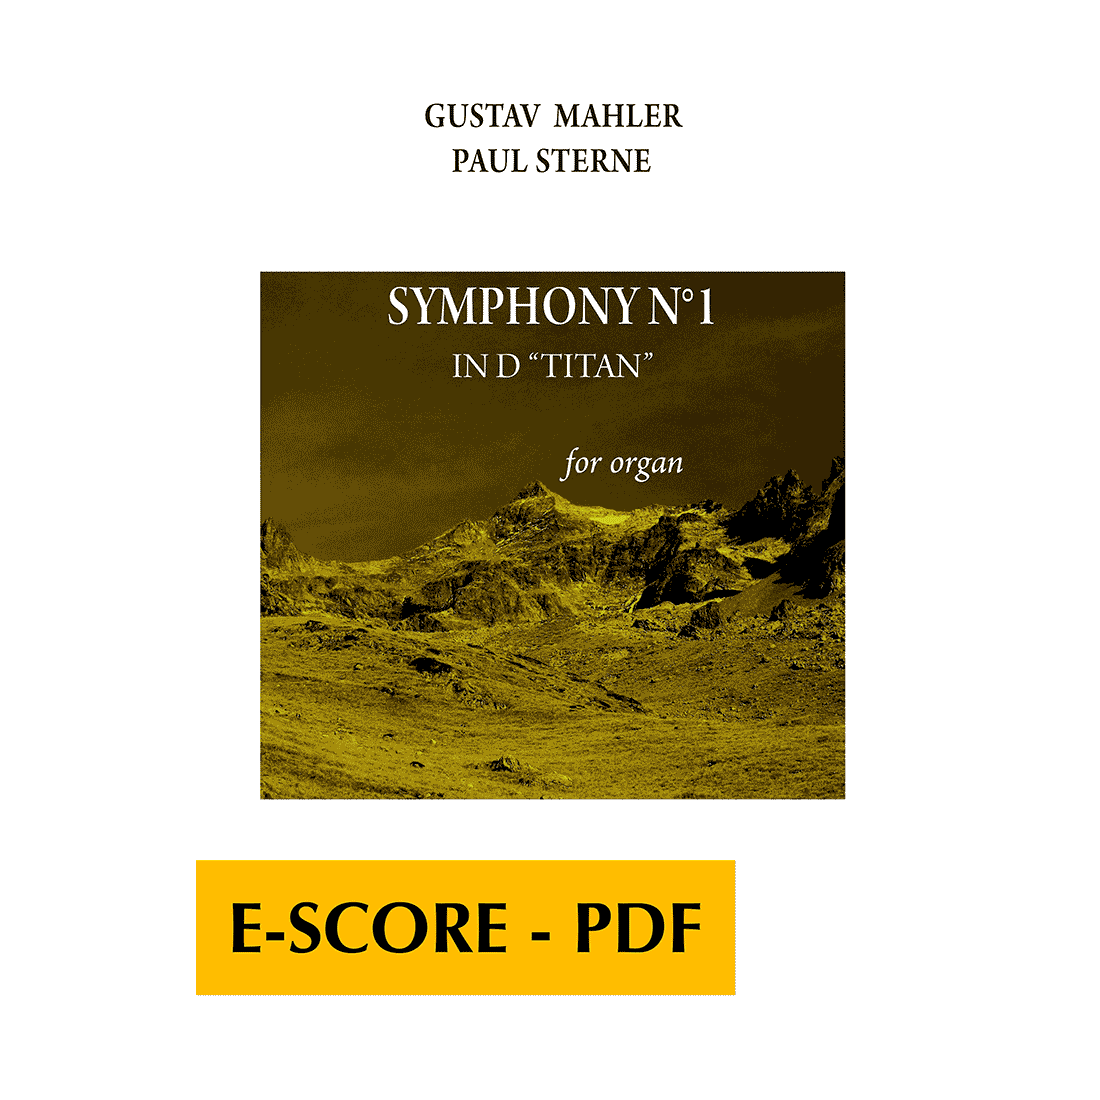 1. Sinfonie in D "Titan" für Orgel - E-score PDF